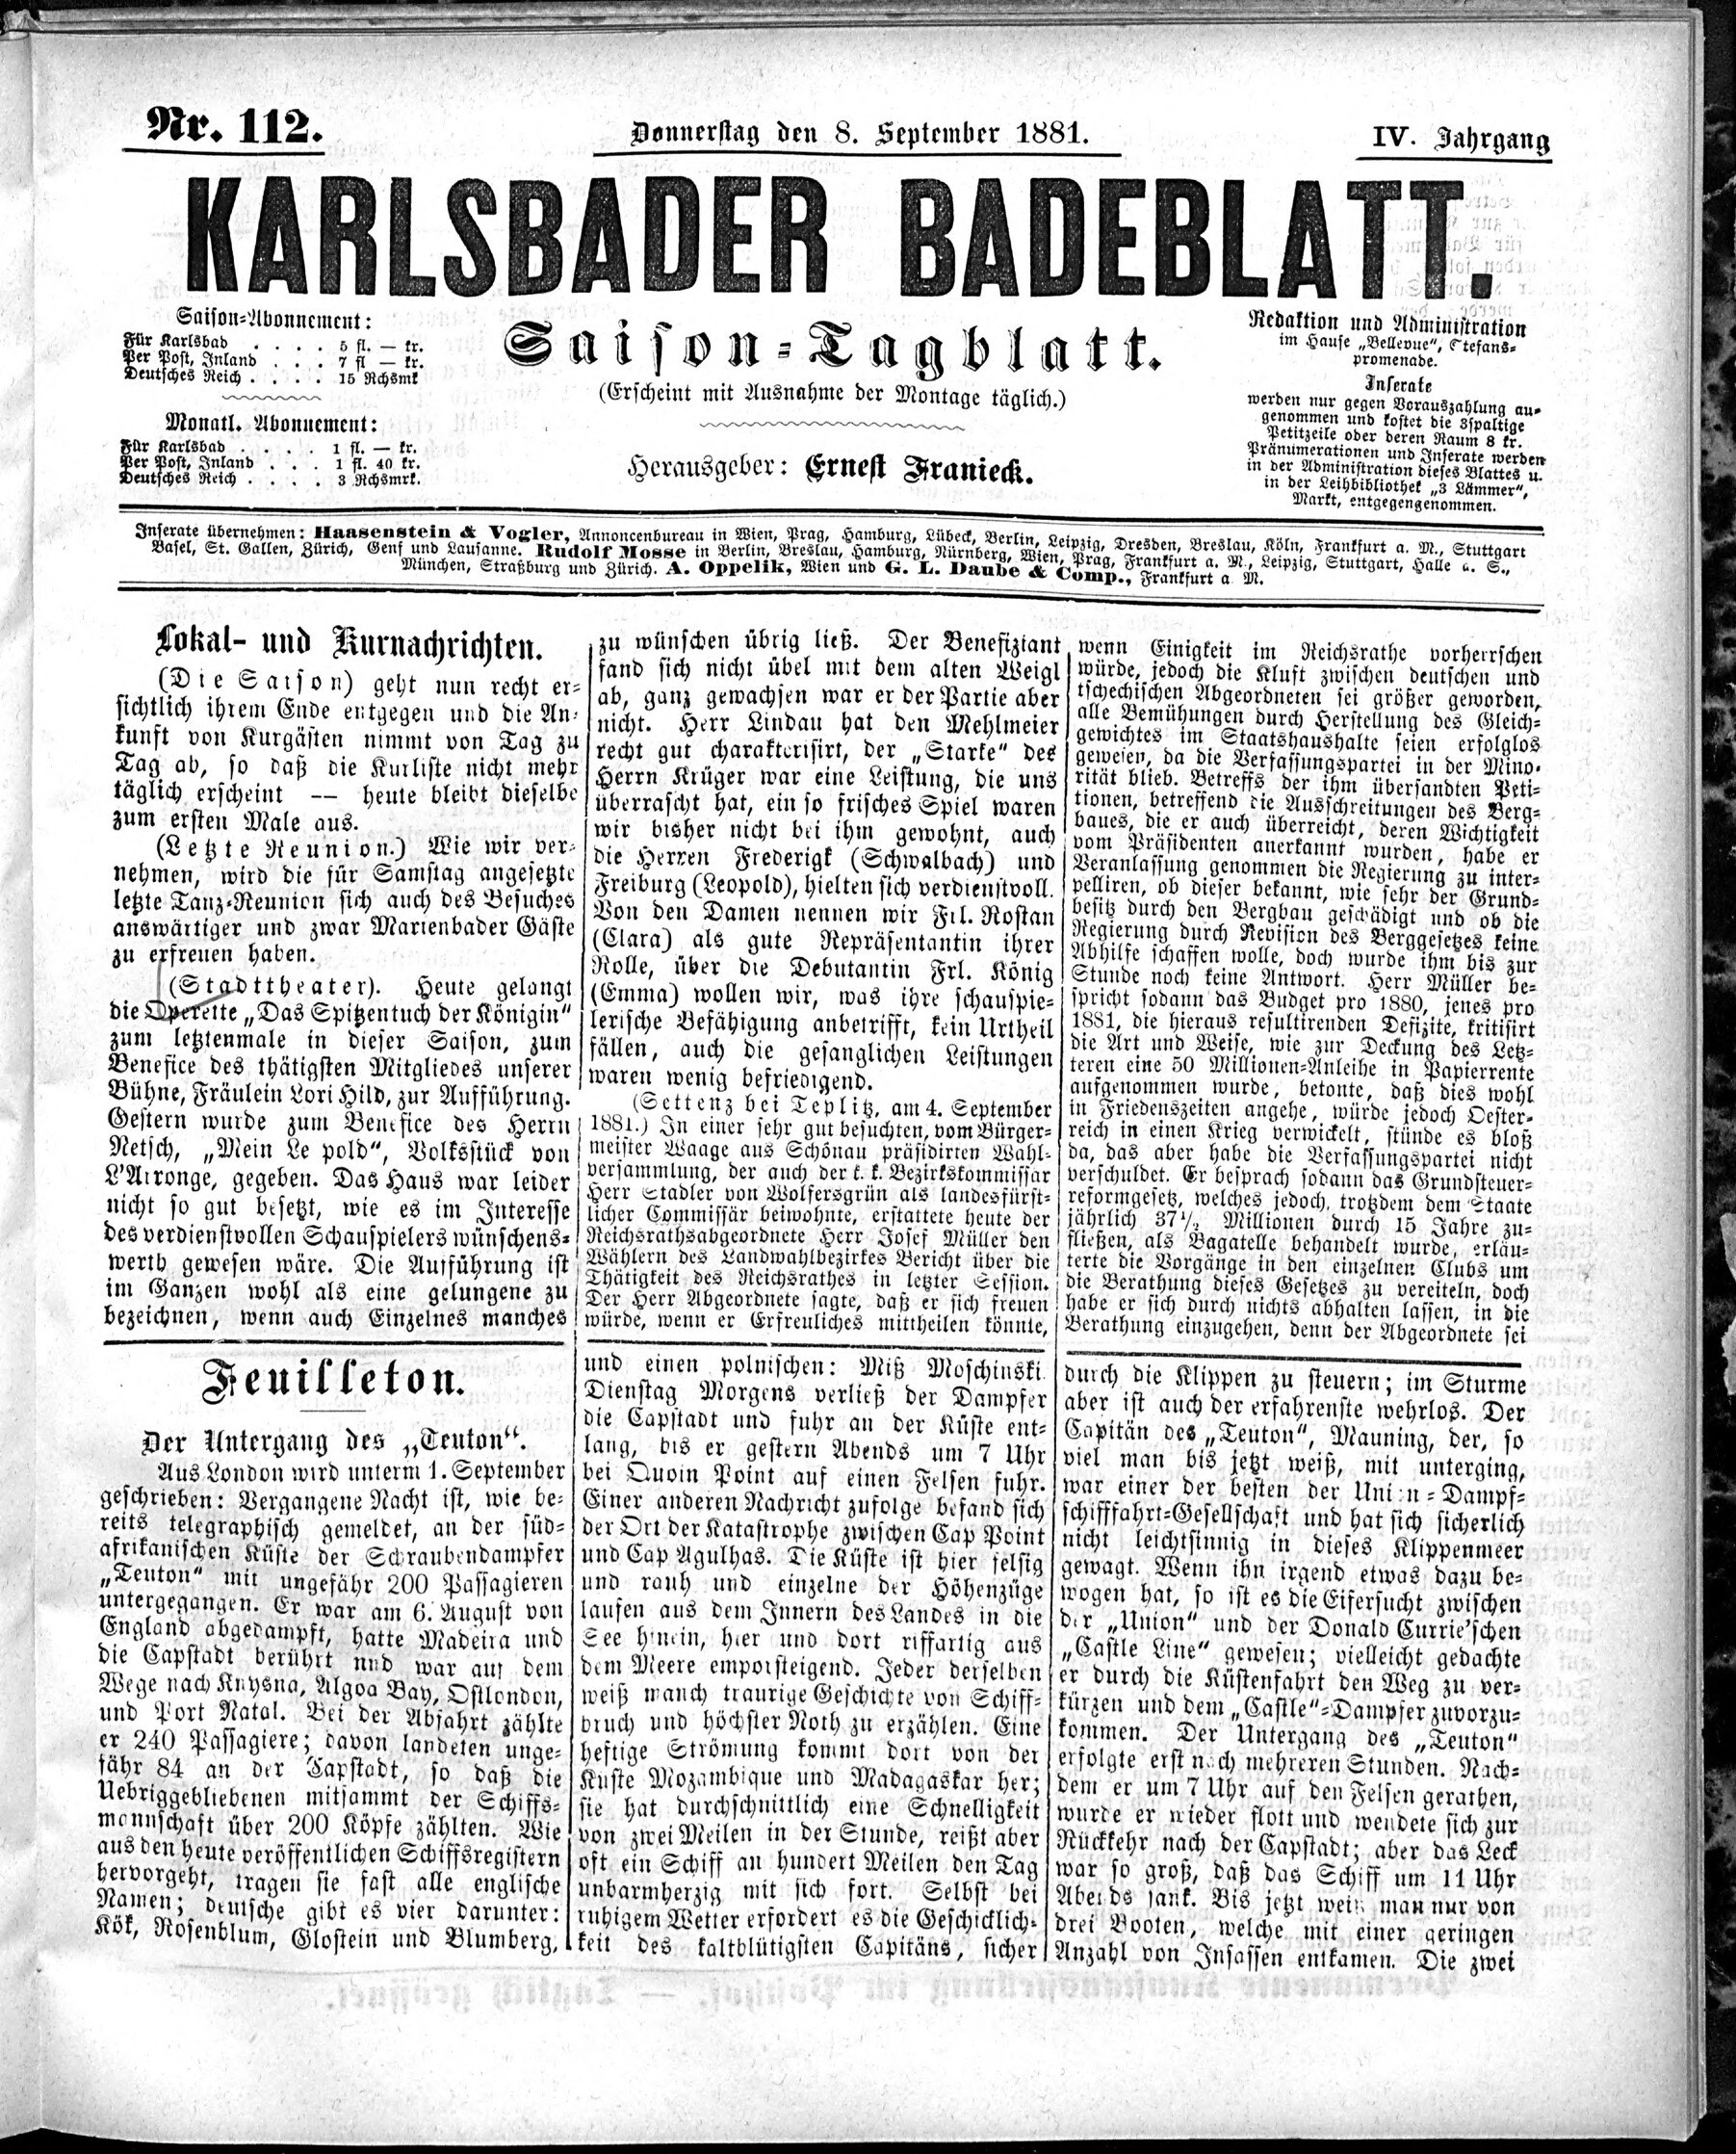 1. karlsbader-badeblatt-1881-09-08-n112_2285